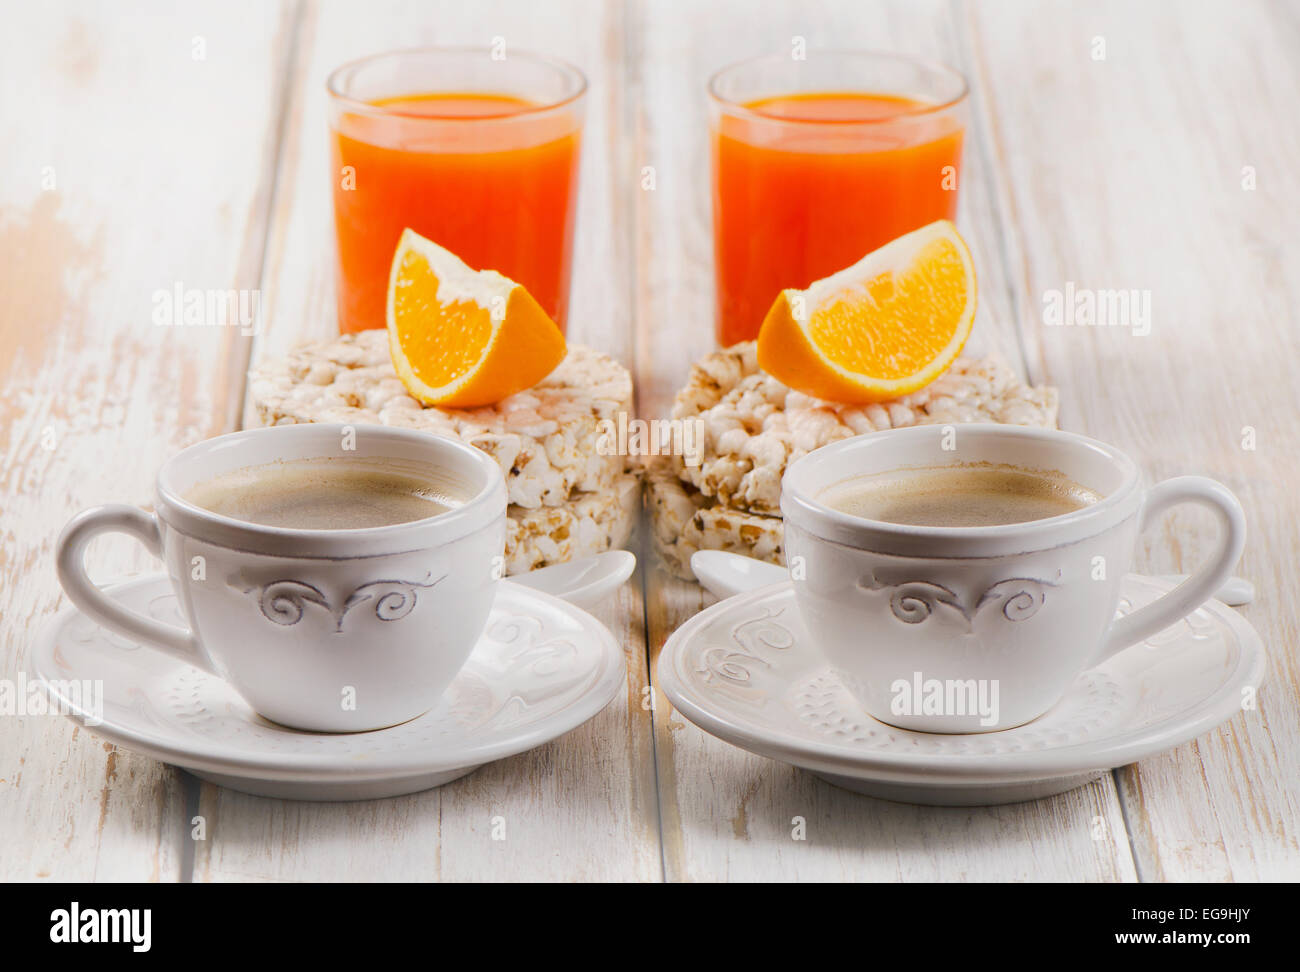 Le petit-déjeuner avec deux tasse de café, jus d'orange sur une table en bois blanc. Banque D'Images